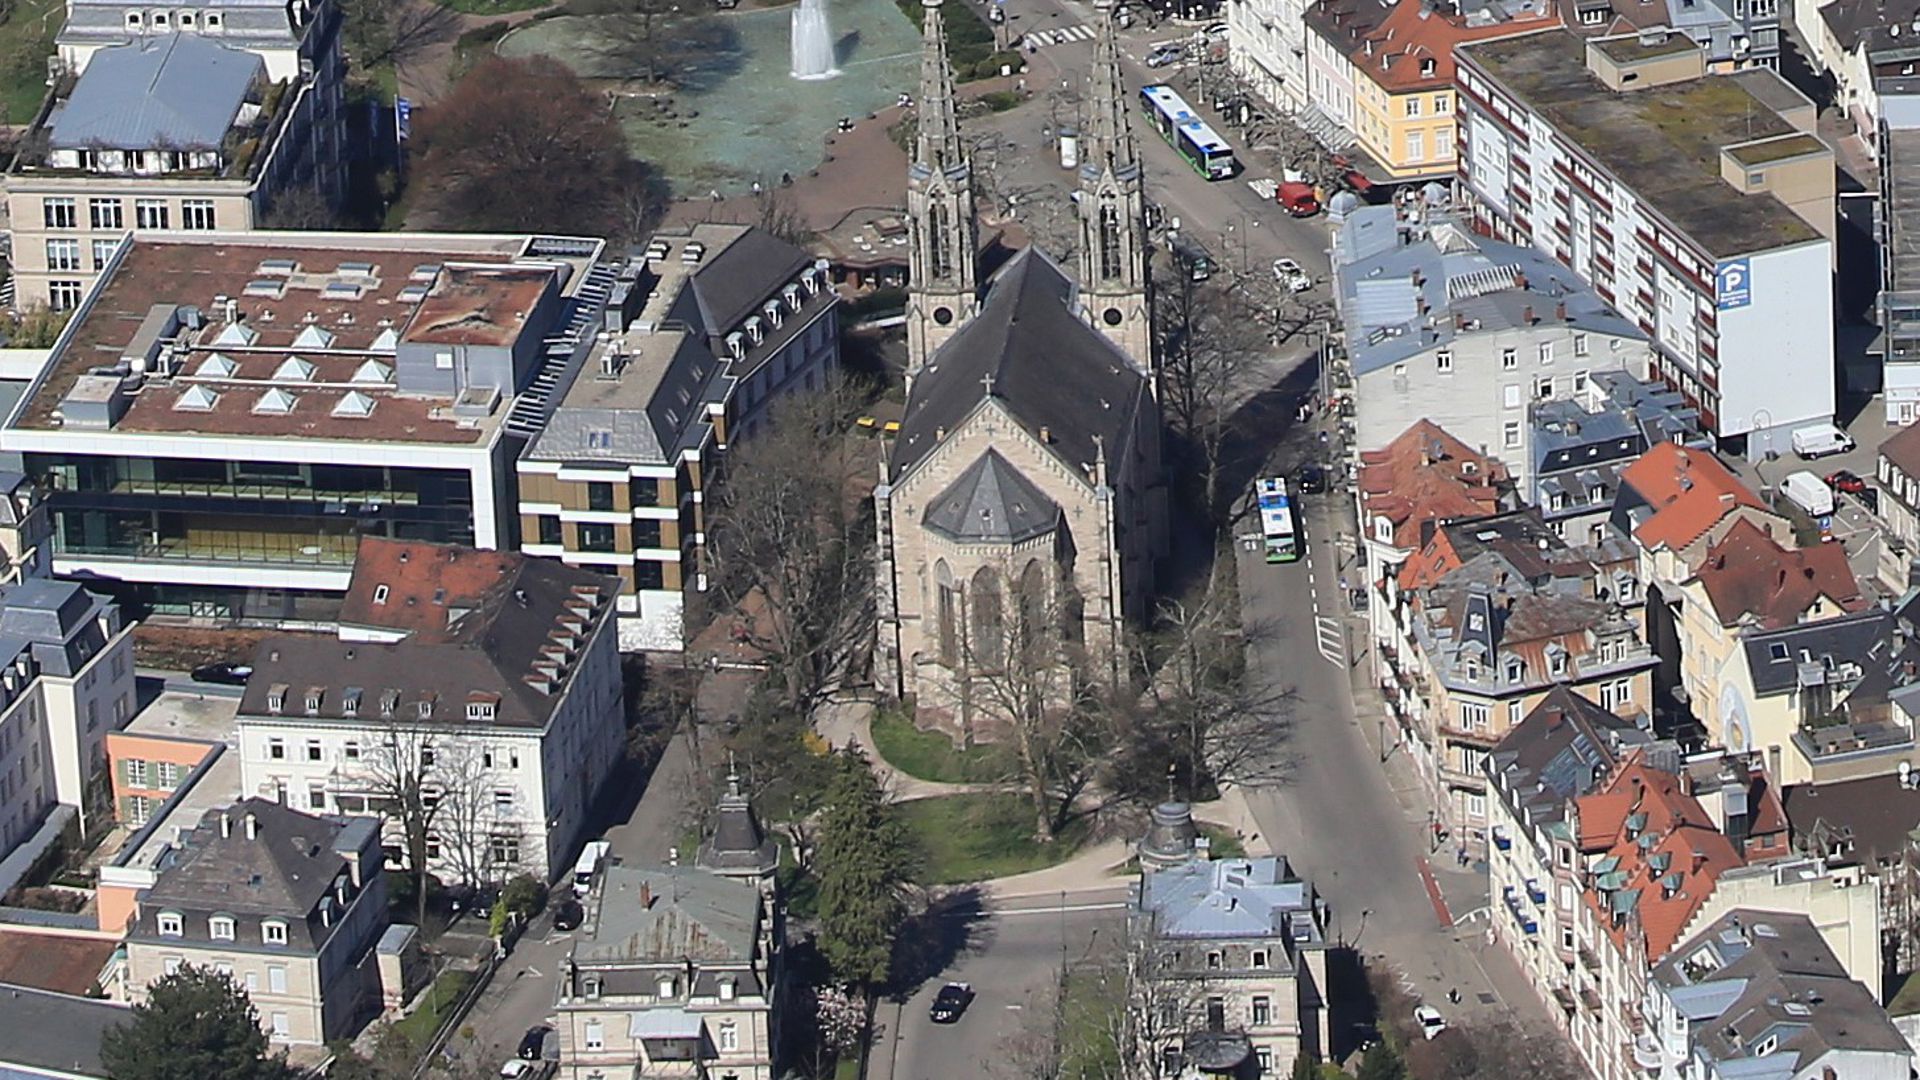 Luftbild des Ludwig-Wilhelm-Platzes mit Kirche in der Mitte.